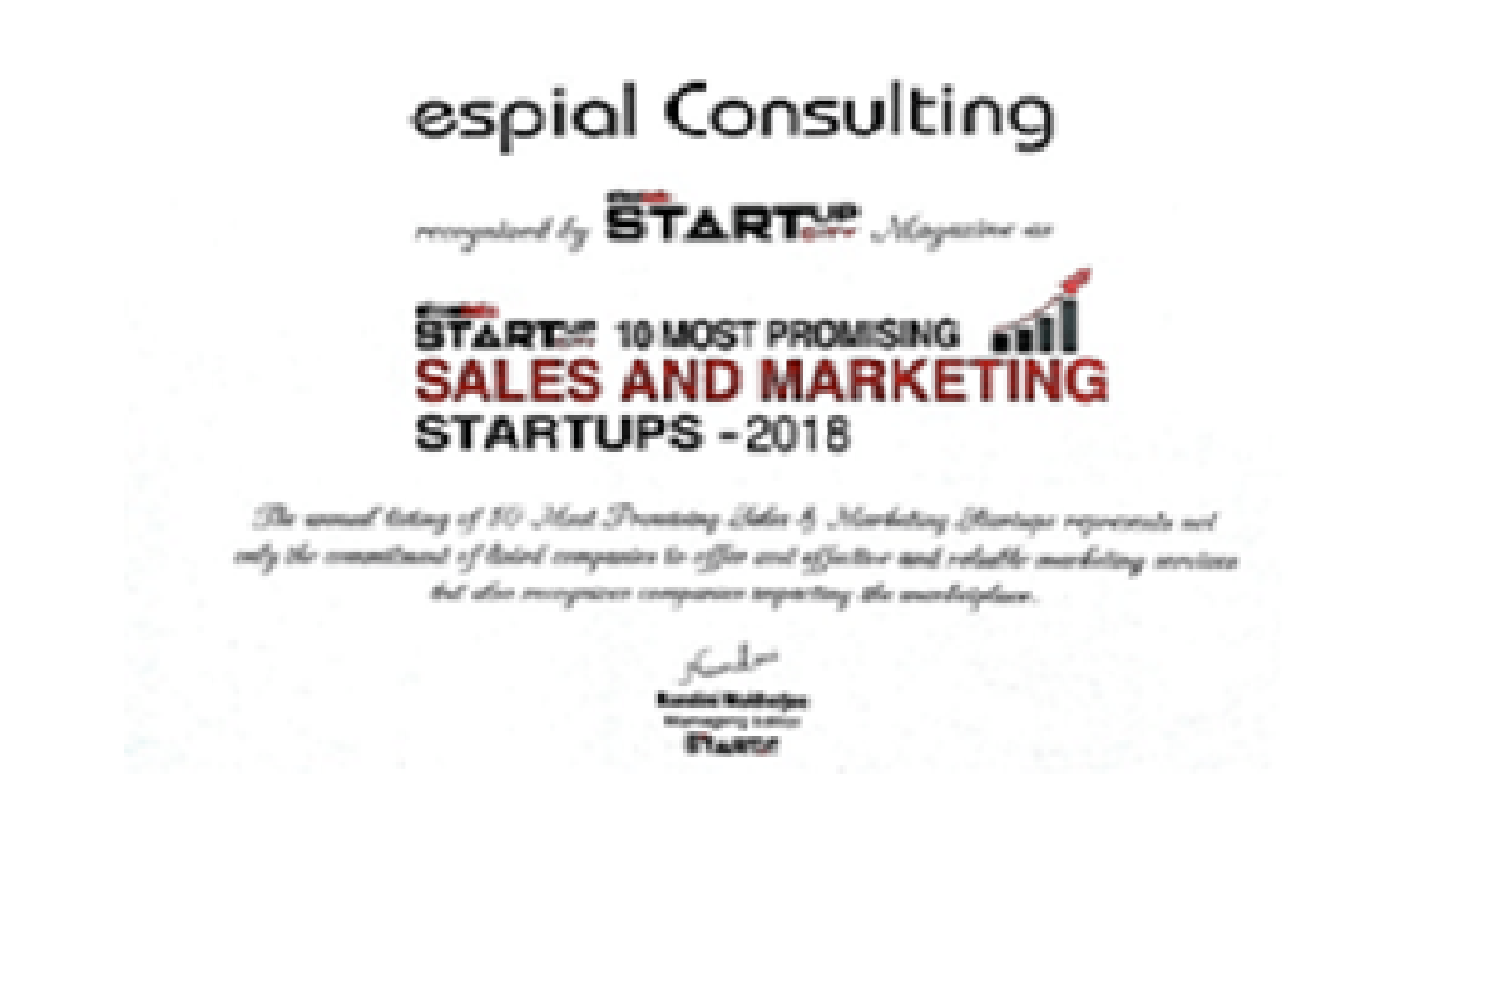 Award - Digital marketing startup